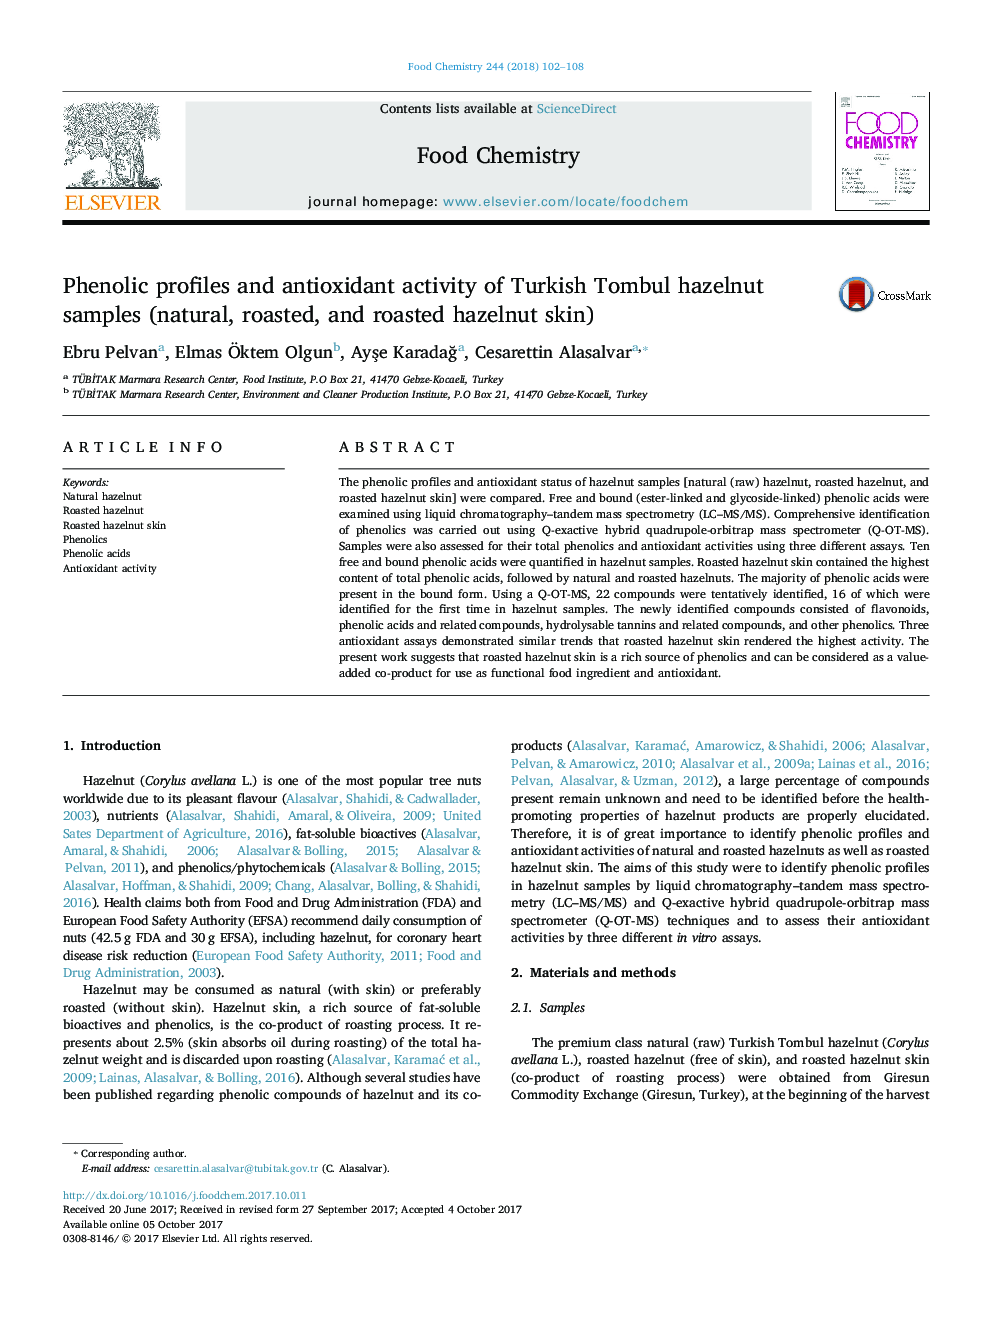 Phenolic profiles and antioxidant activity of Turkish Tombul hazelnut samples (natural, roasted, and roasted hazelnut skin)